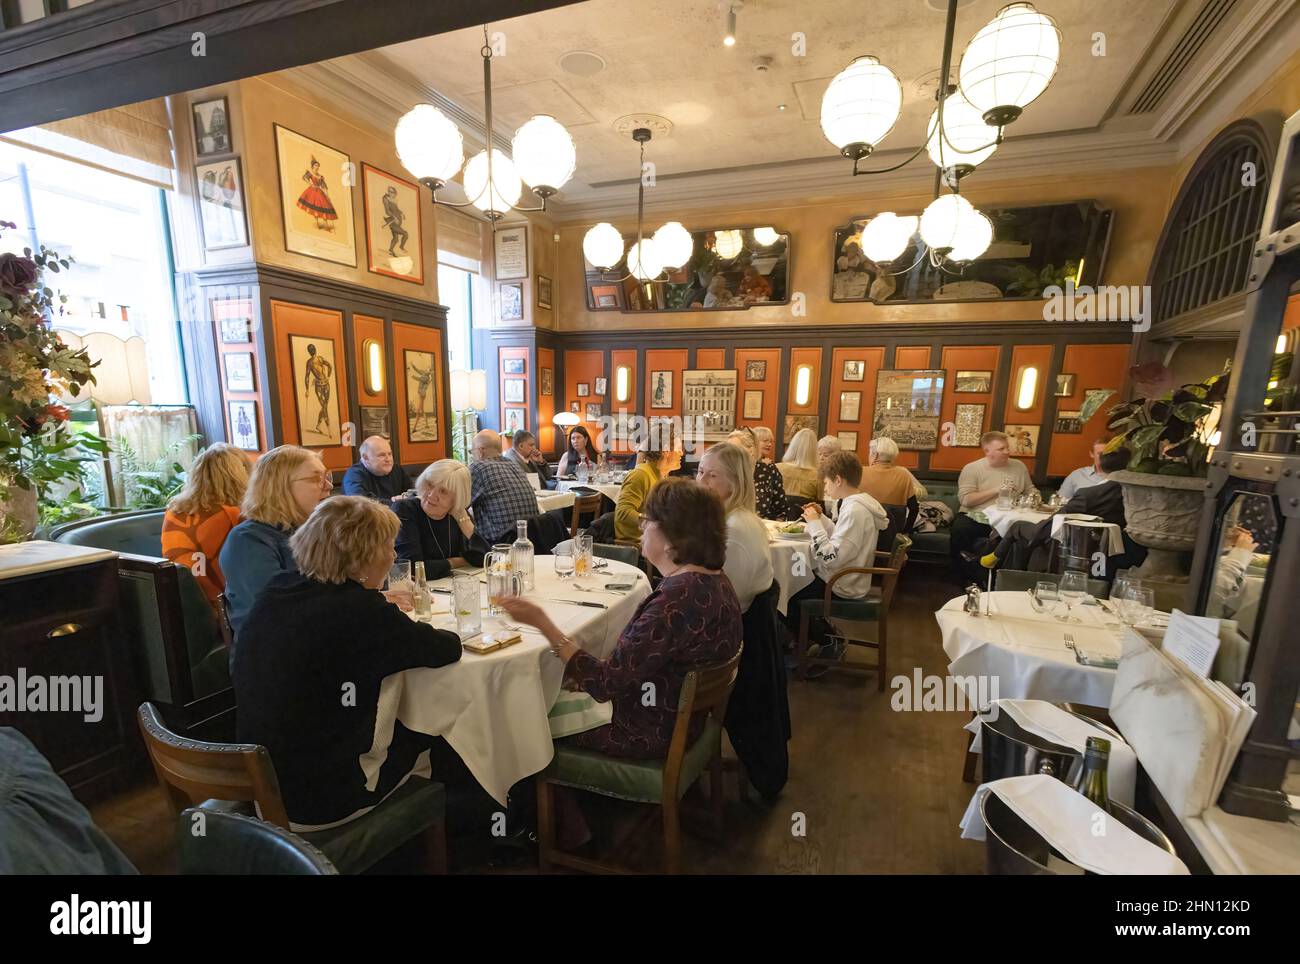 The Ivy Restaurant London; persone che mangiano un pasto all'interno del ristorante Ivy, Henrietta Street, Covent Garden London UK Foto Stock